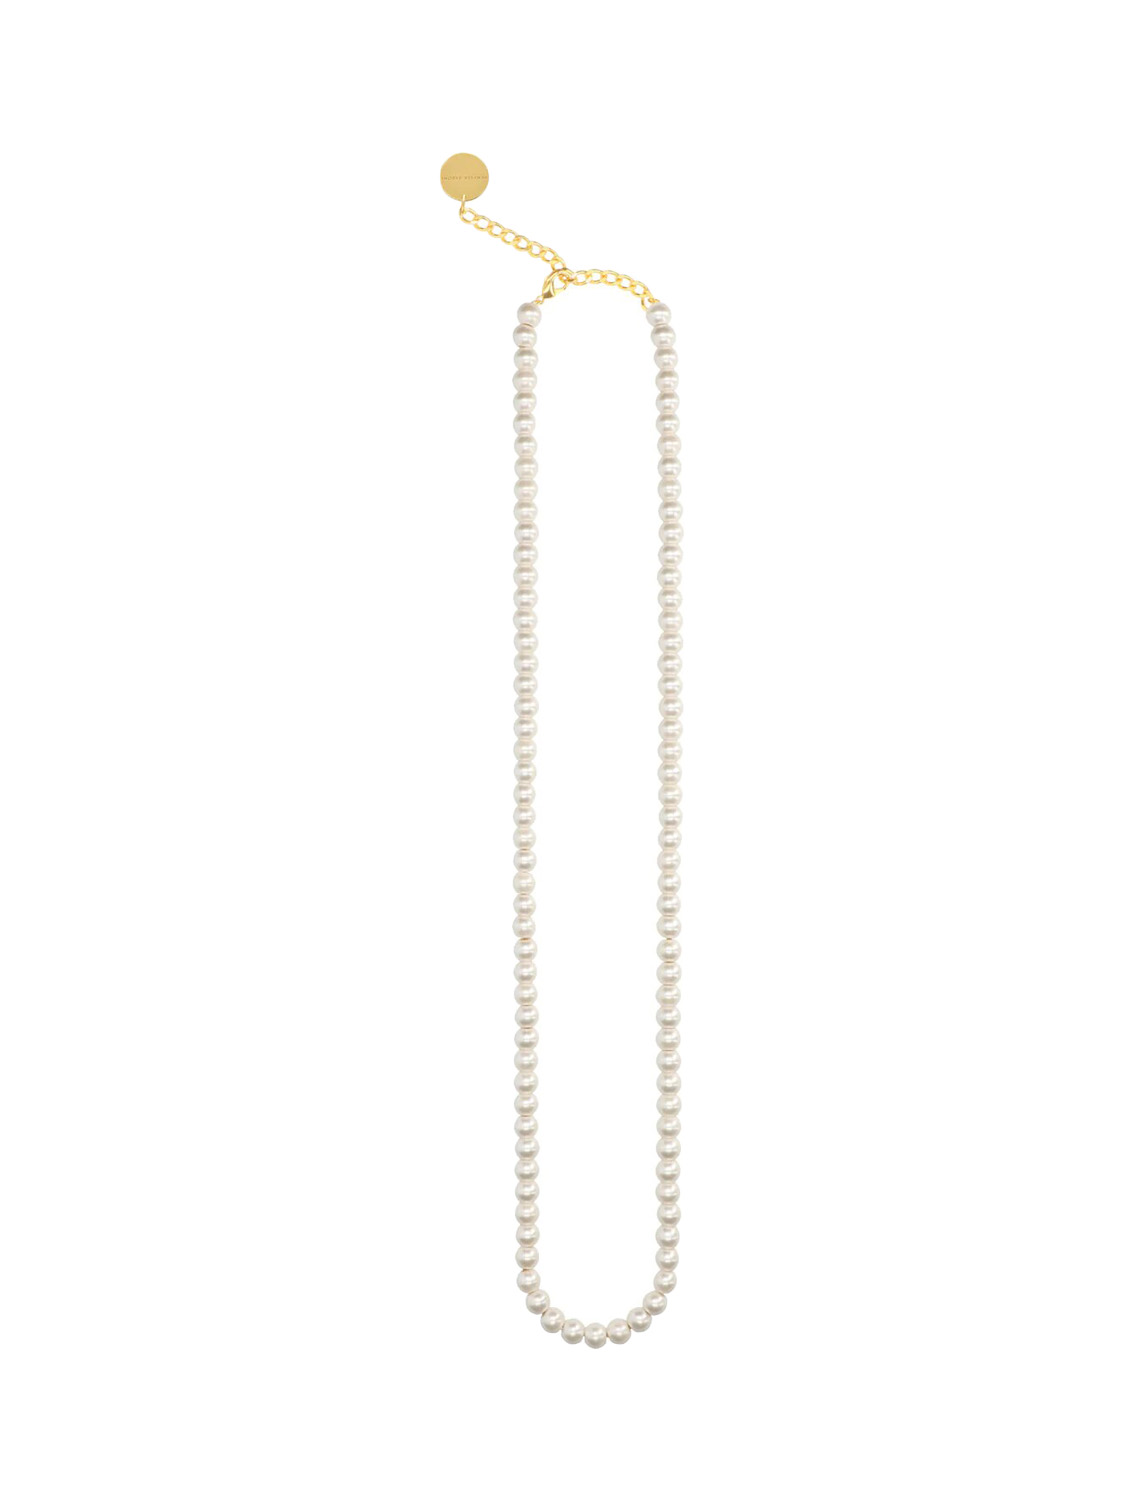 Pearl Necklace Long Pearl – Lange Kette im Kugeldesign in Perlenoptik